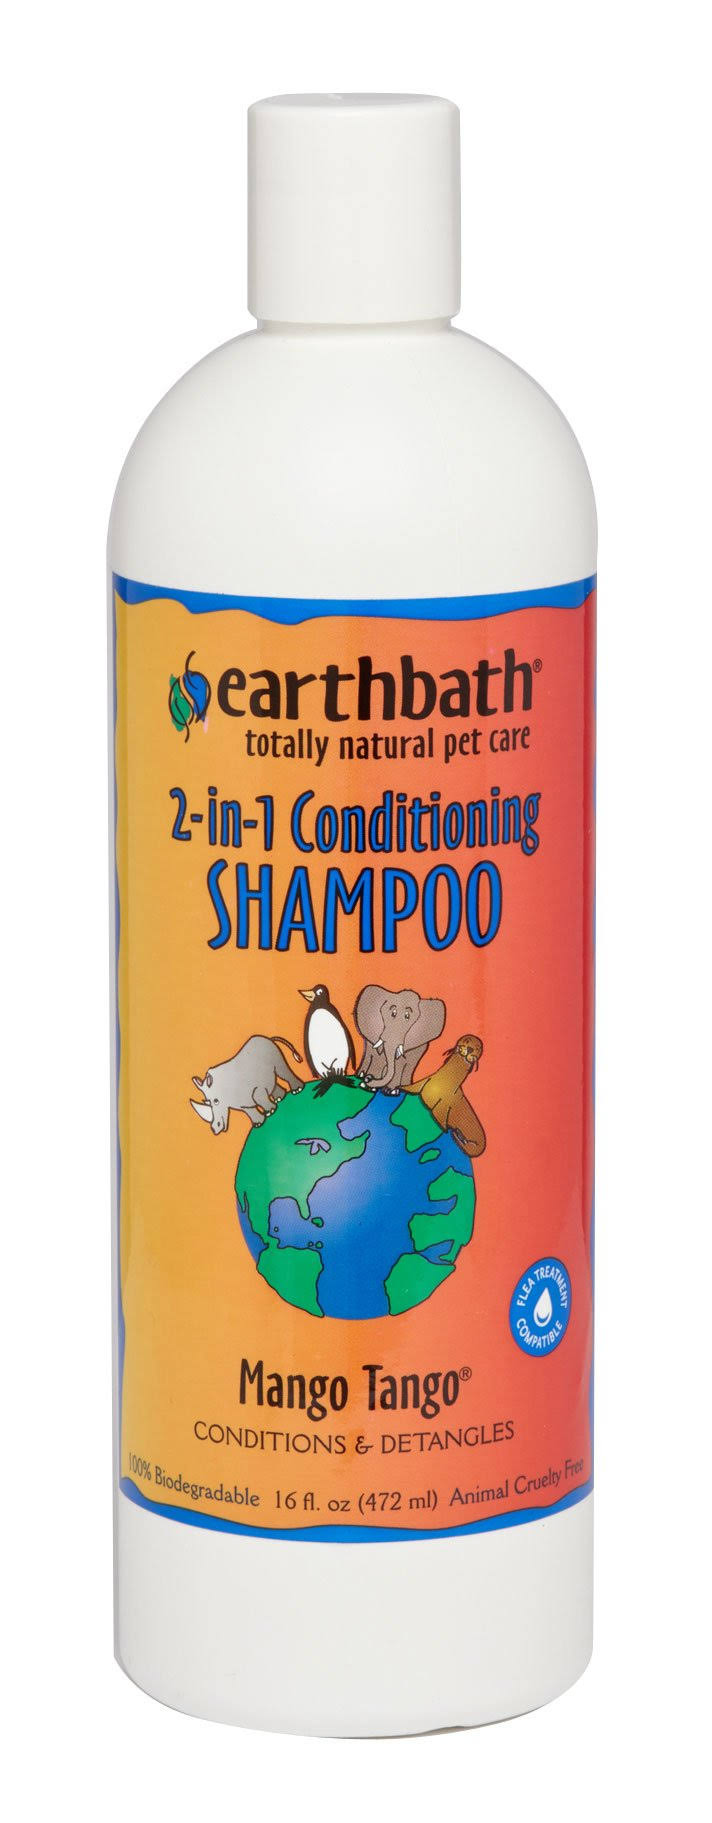 Earthbath Shampoo - Mango Tango